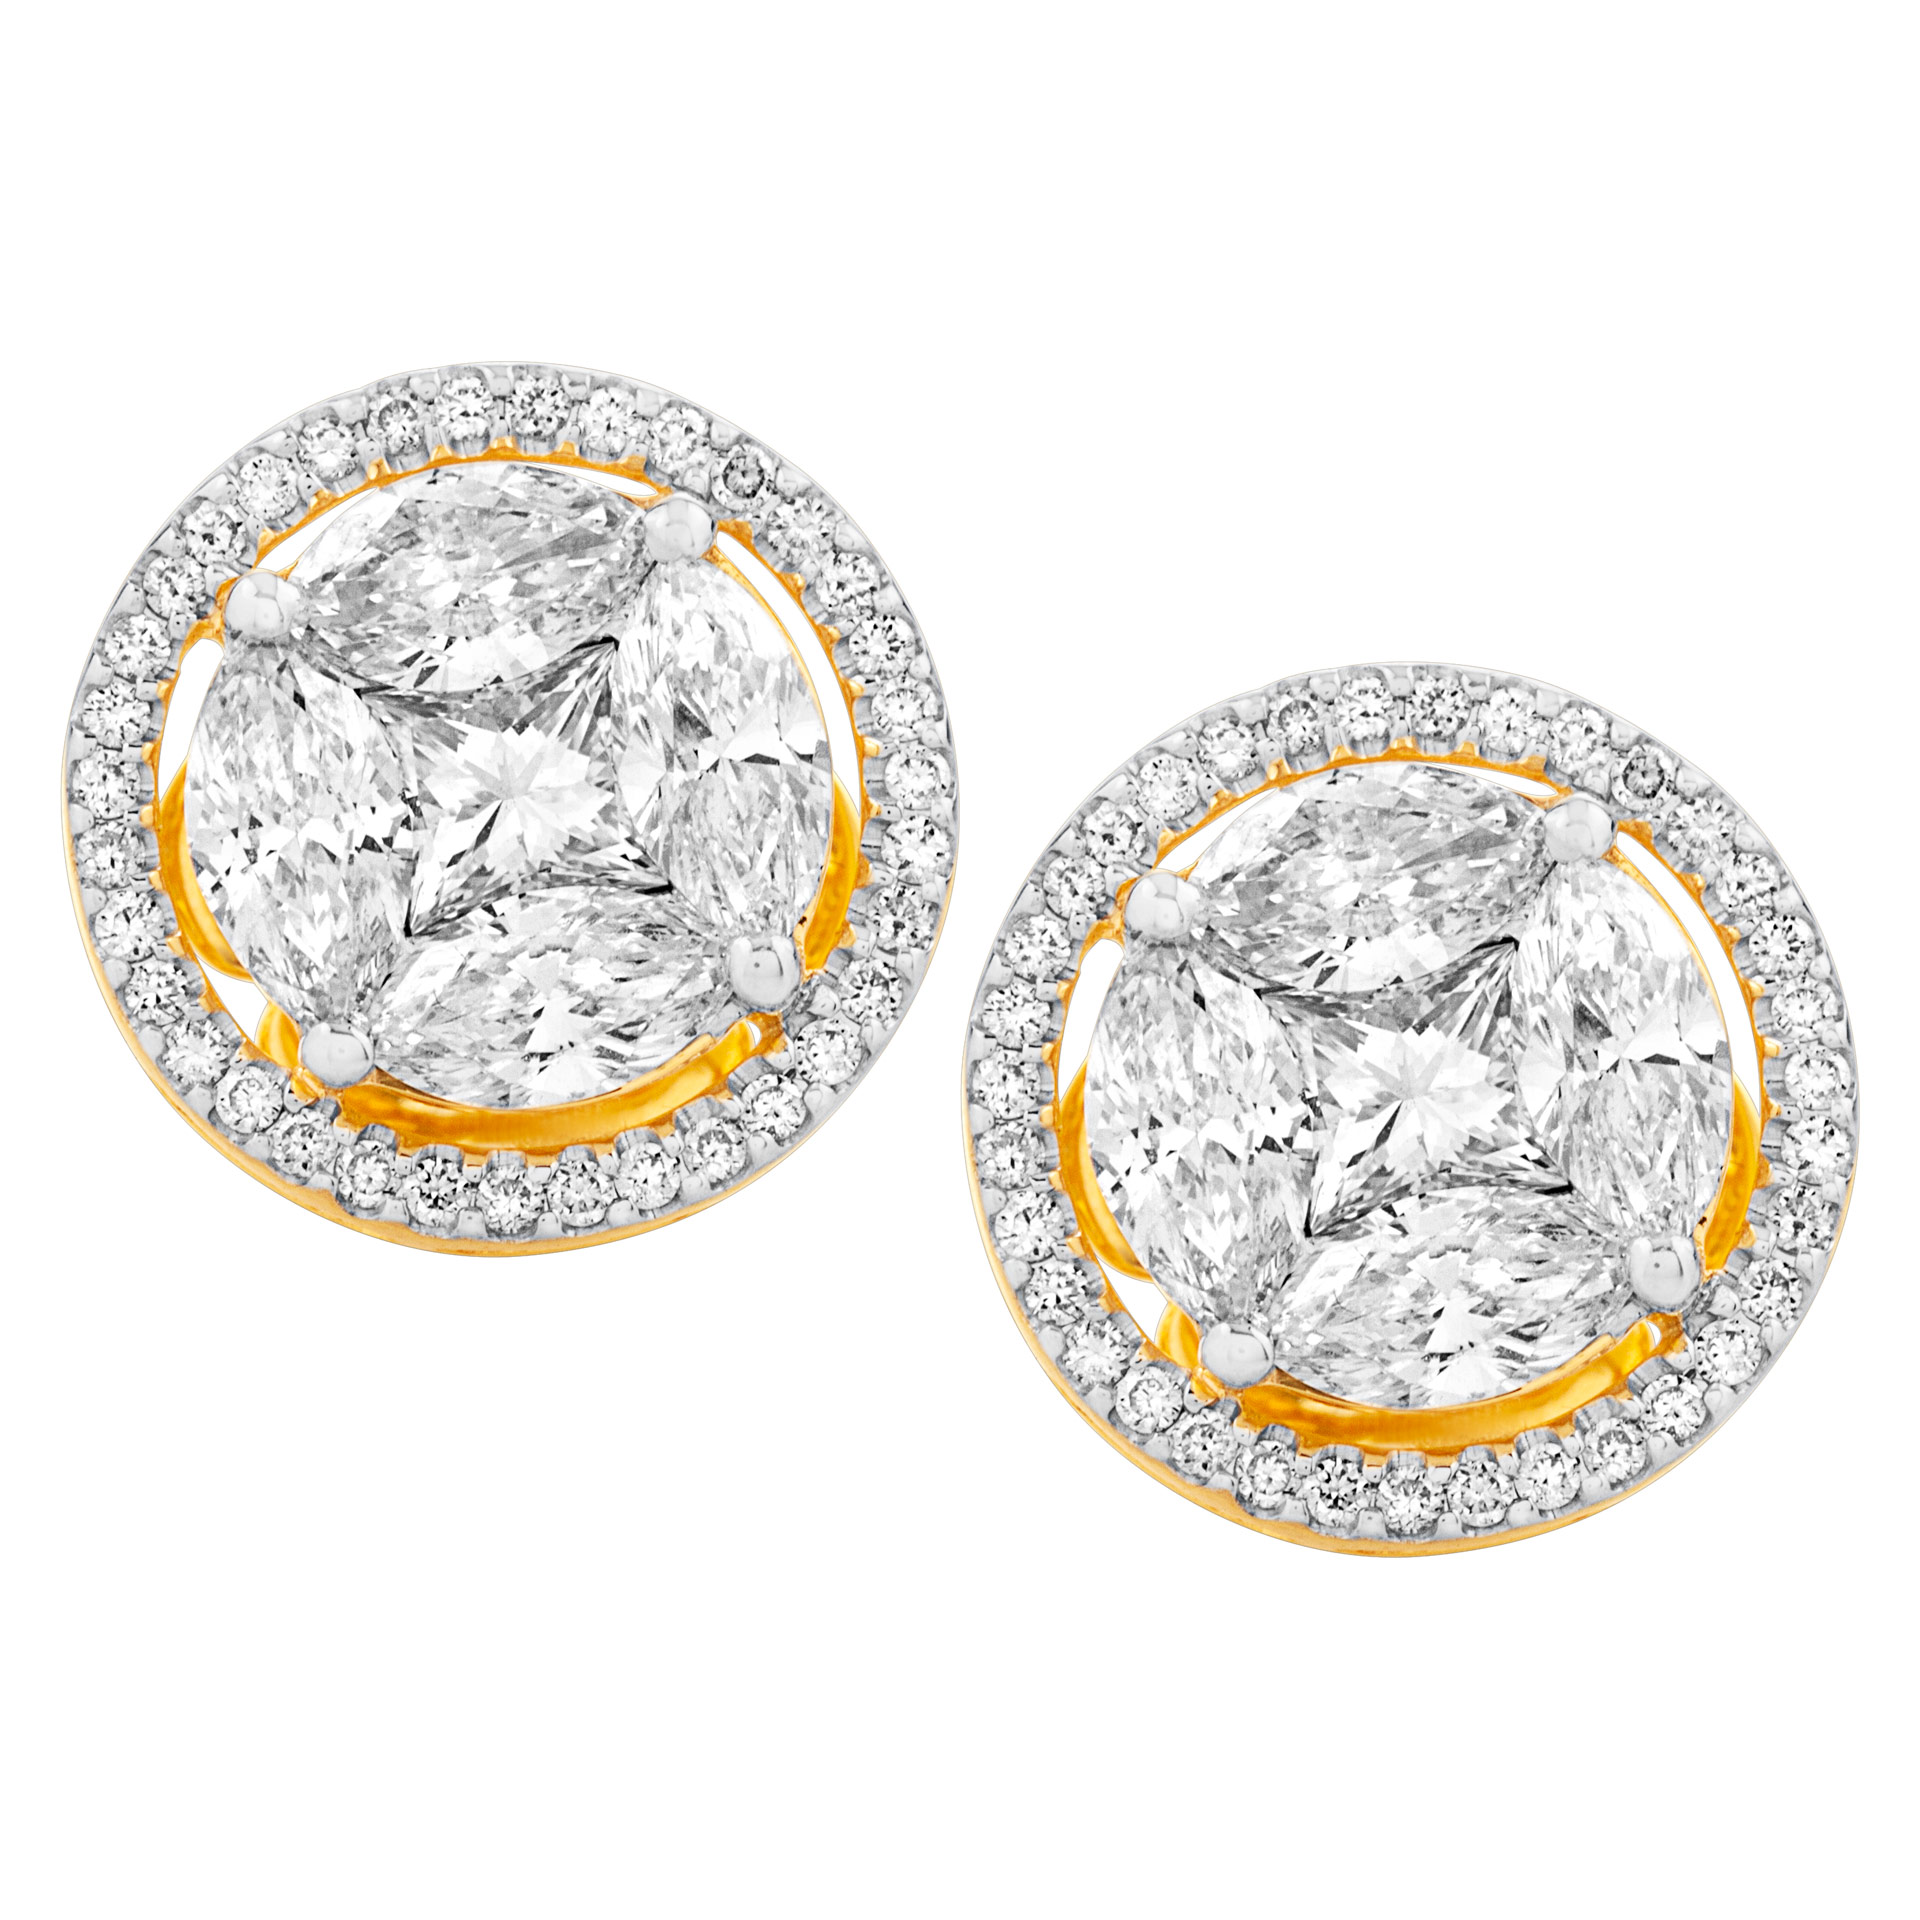 Diamond earrings in 18K yellow gold